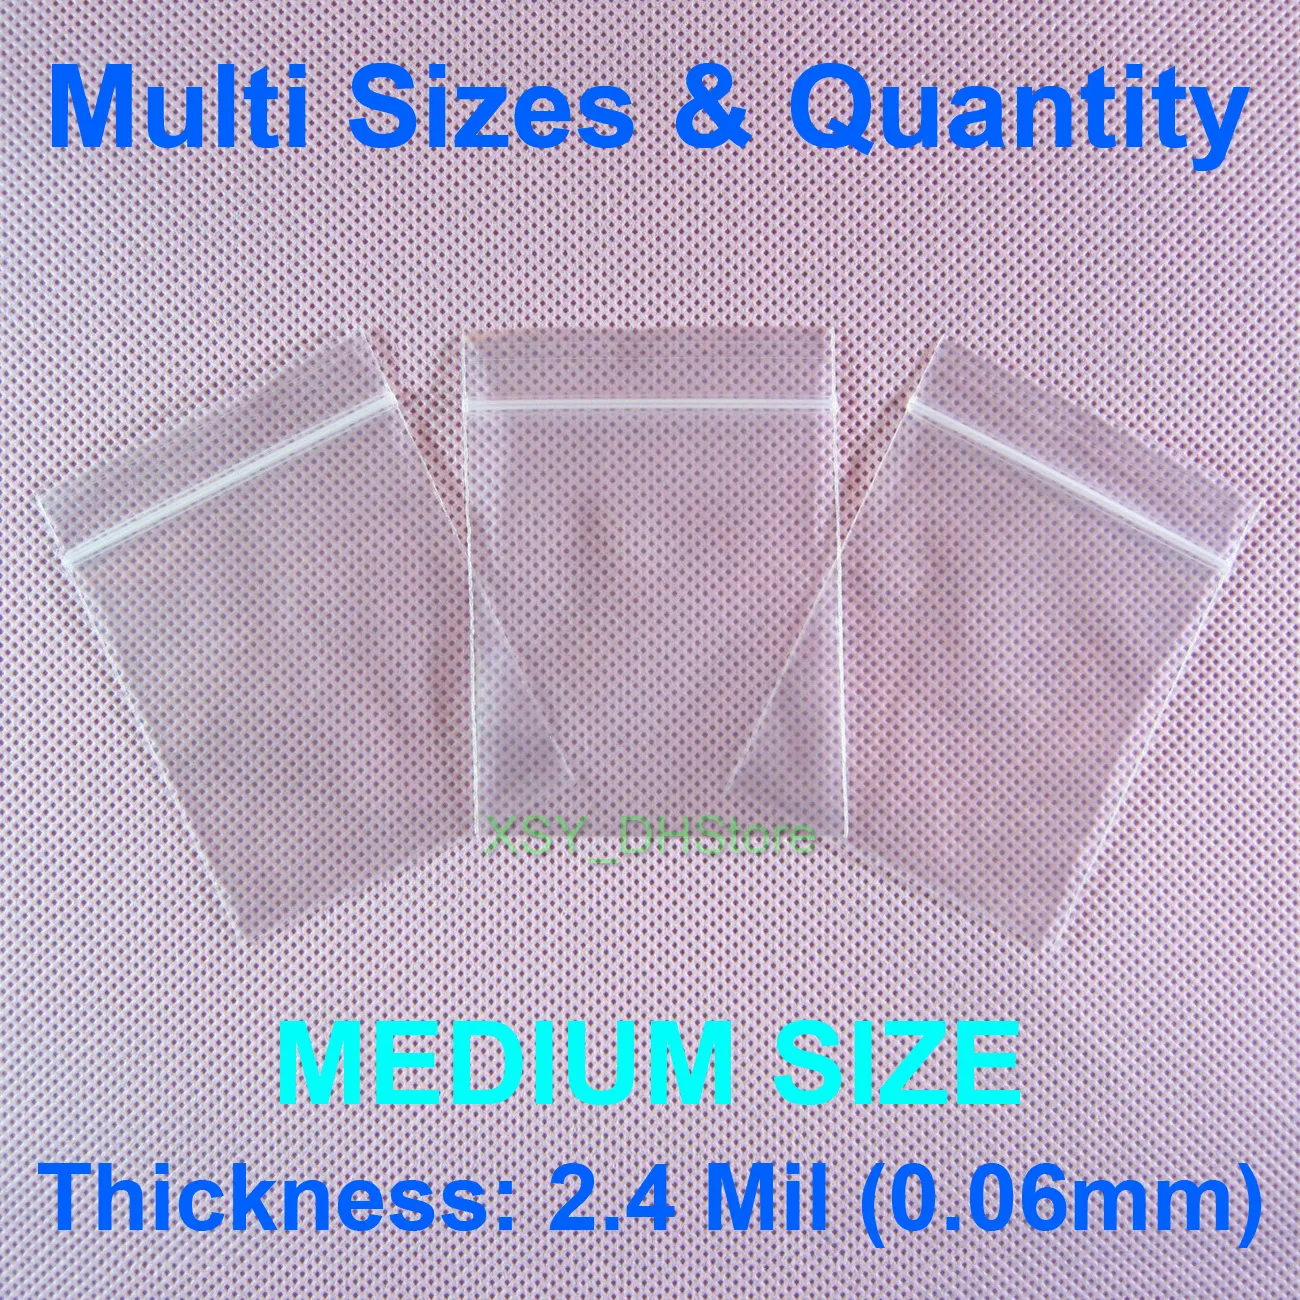 Taglie multiple Quantità 2,4 Mil Sacchetti con cerniera in polietilene DIMENSIONE MEDIA Pollici (da 4,3 a 6,7) x (6,3" - 9,8") Imballaggio in plastica (11 17 cm) * (160 250 mm)